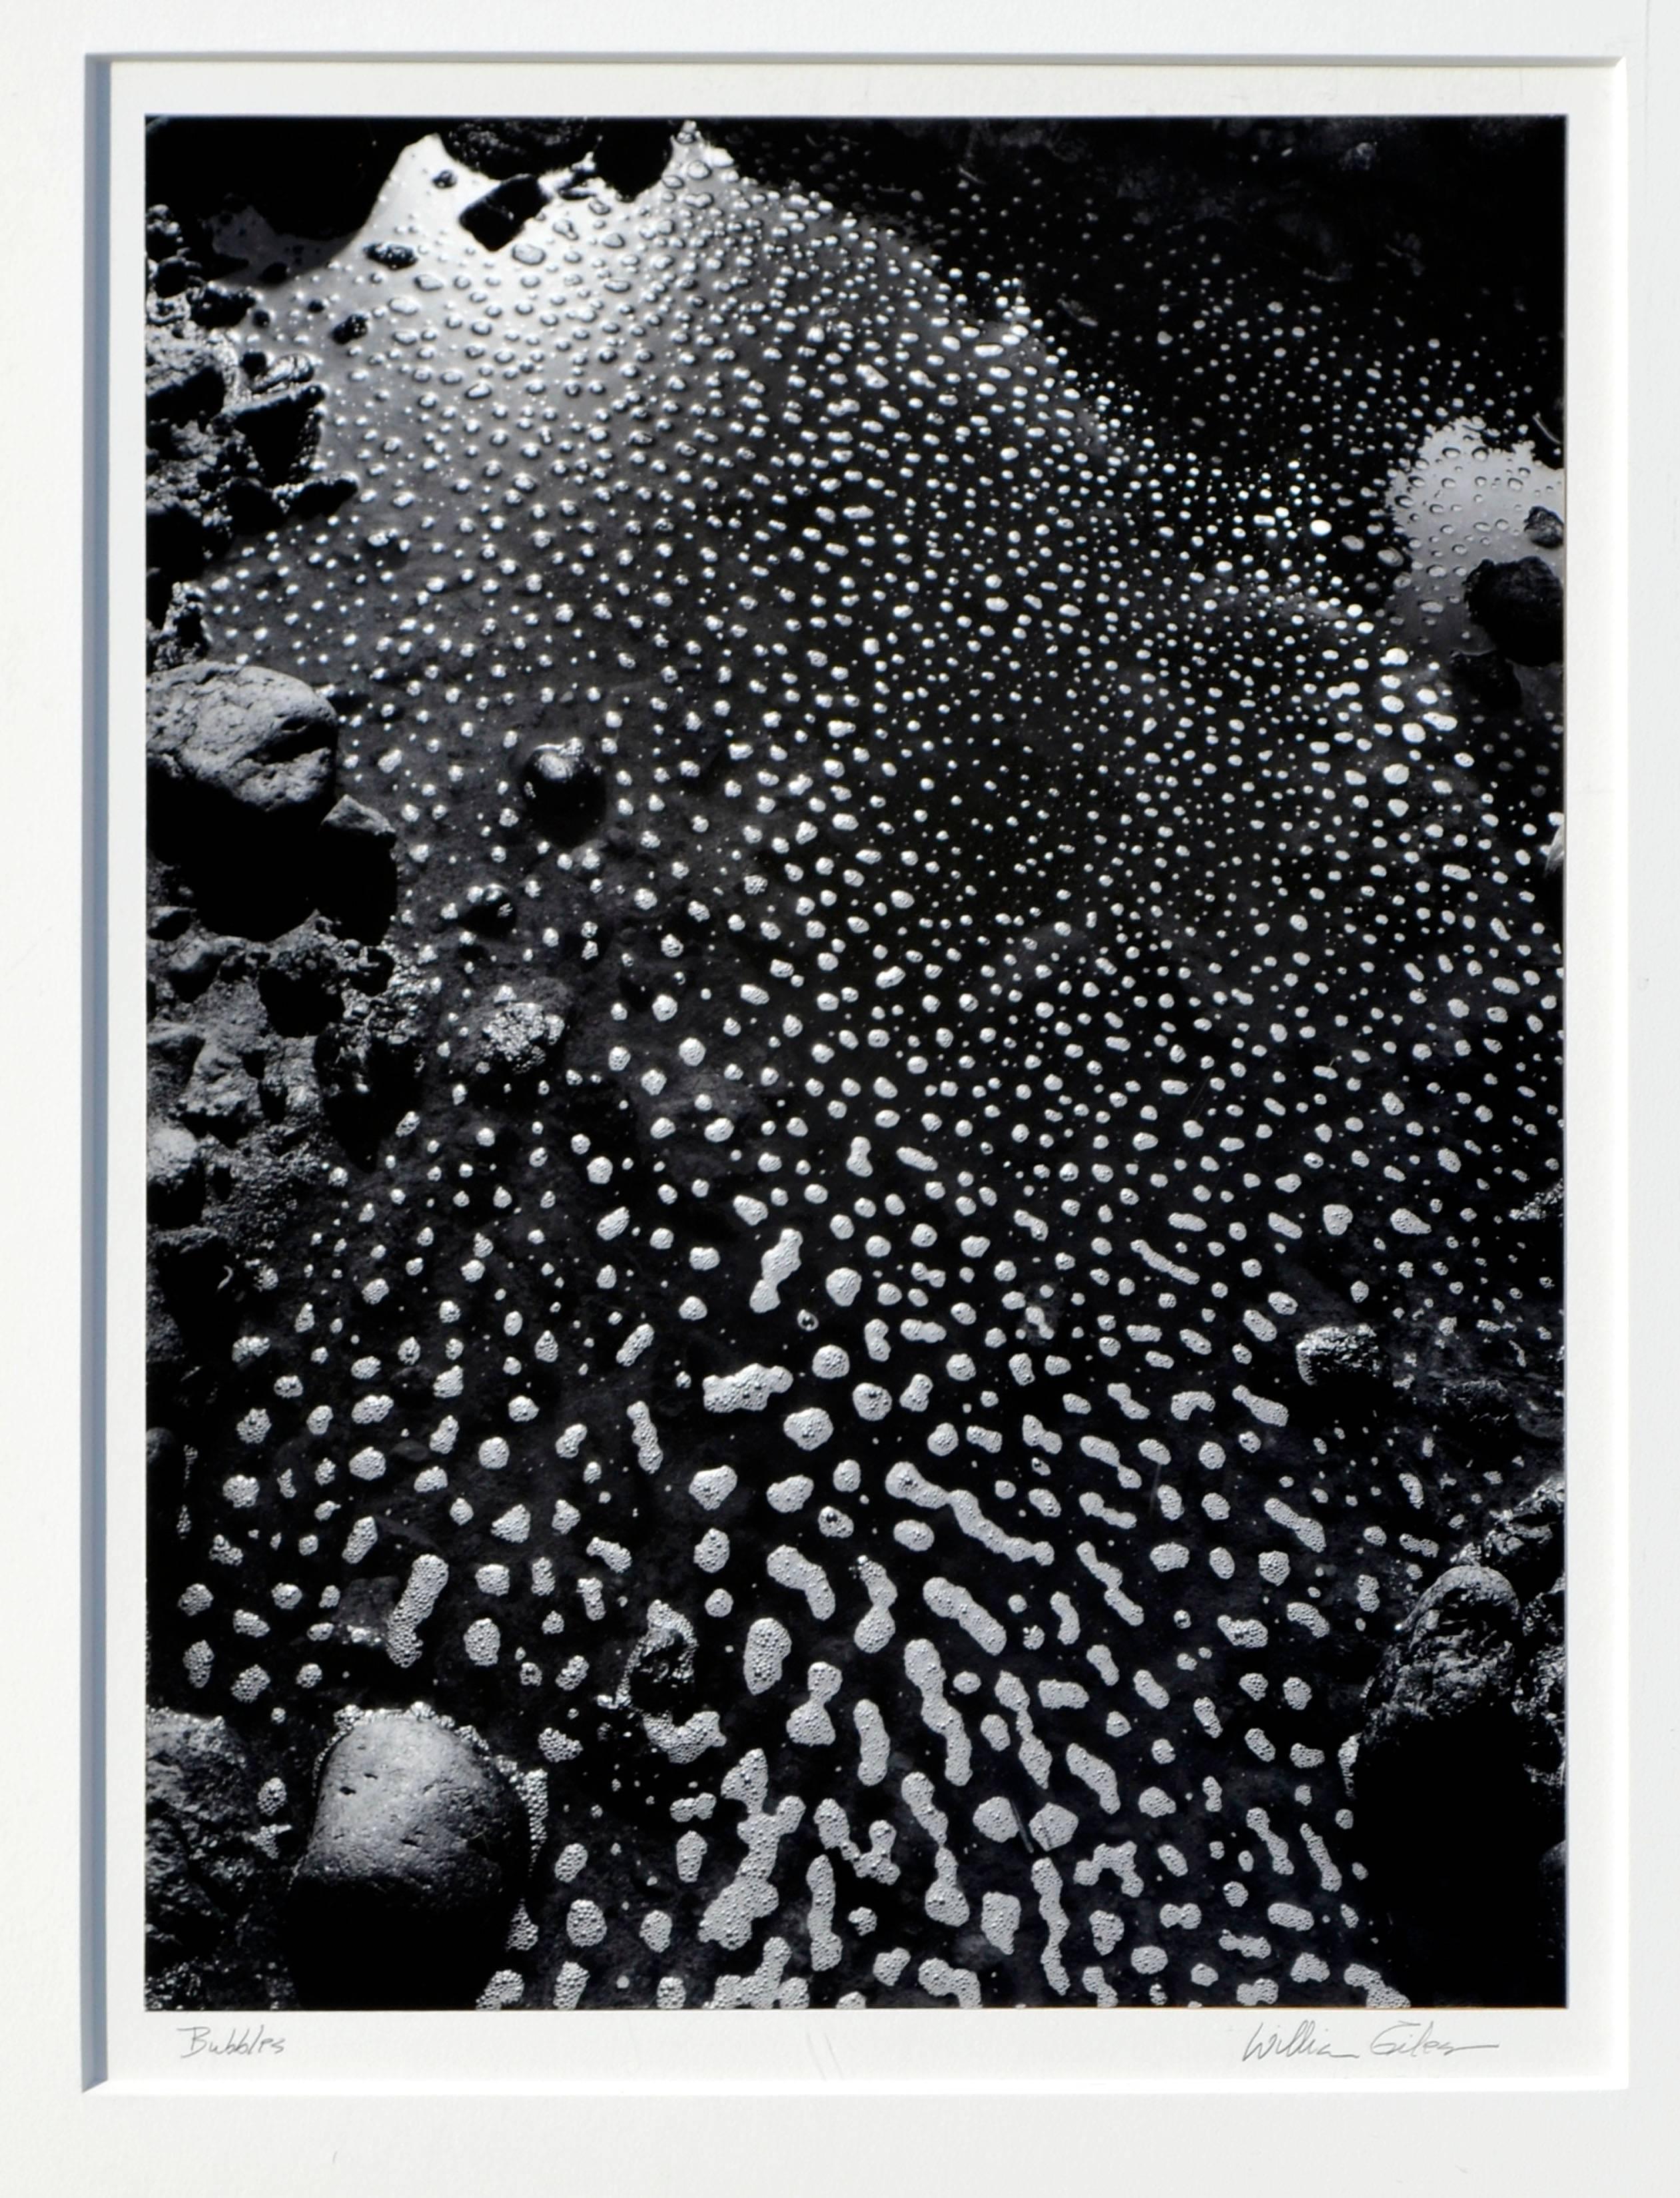 Bubbles, Big Sur 1970 - Photograph by William Giles